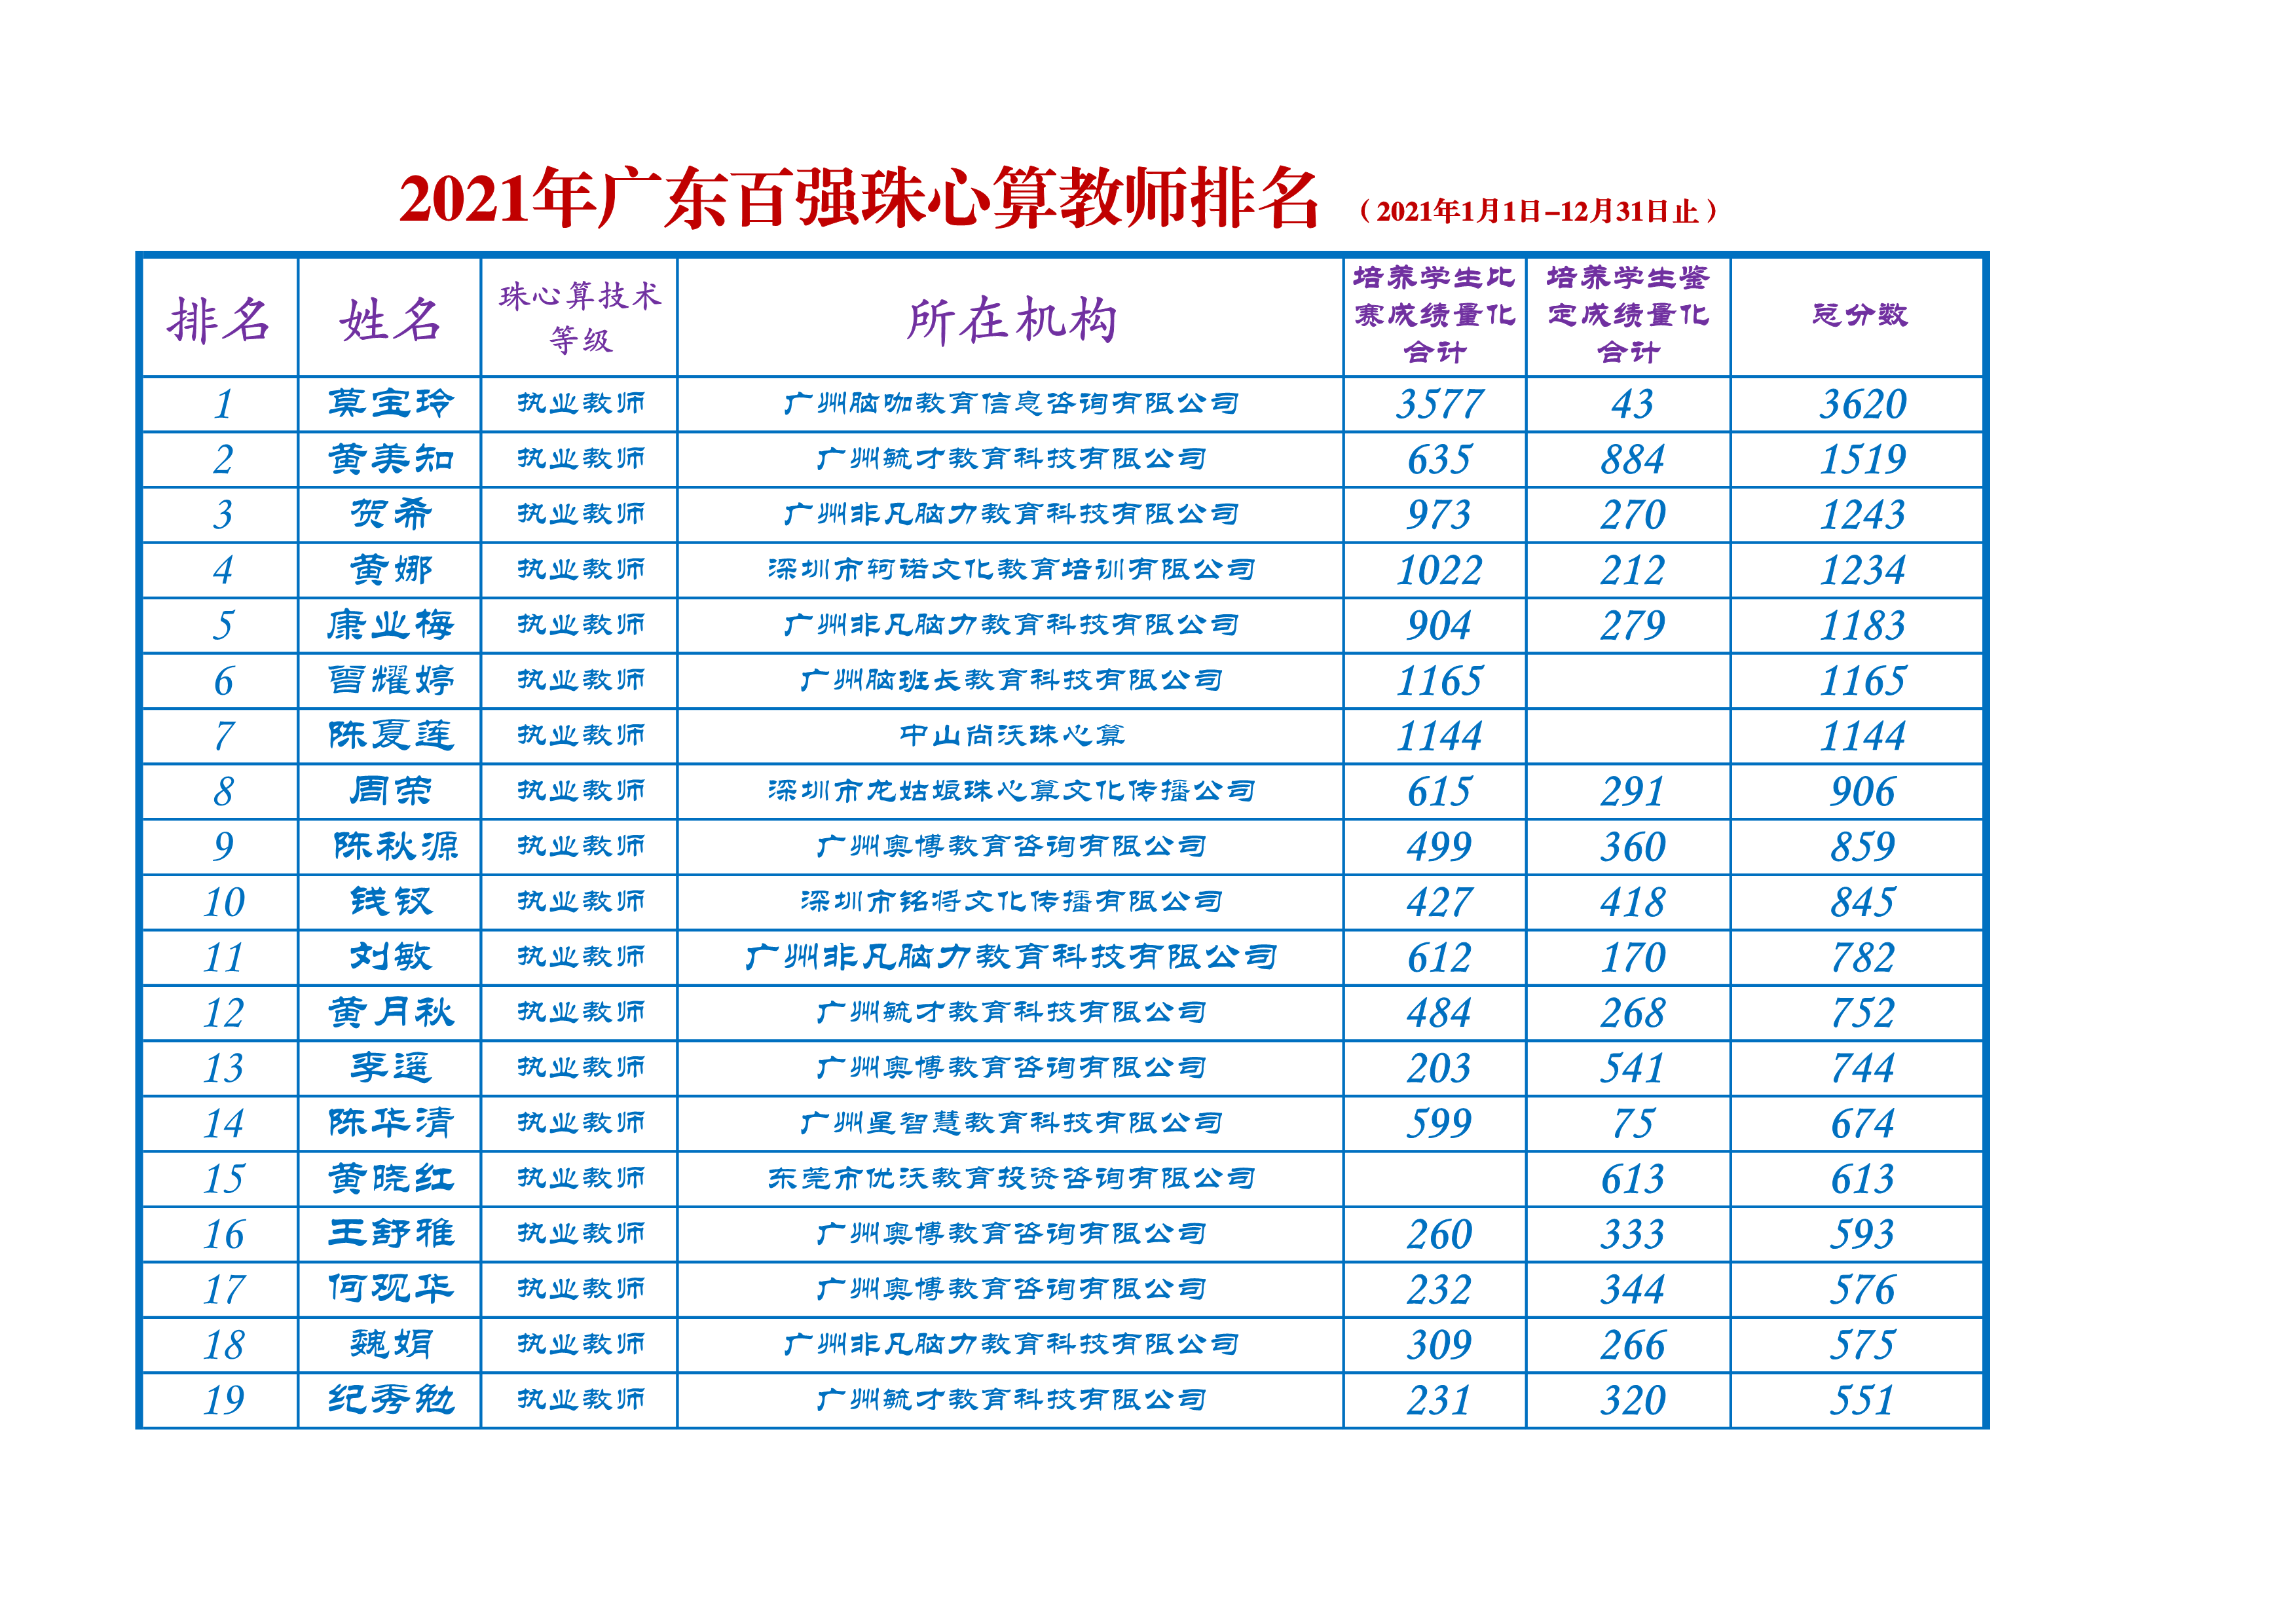 2021年广东百强珠心算教师排名（2021年1月1日-12月31日止） - 广东省 